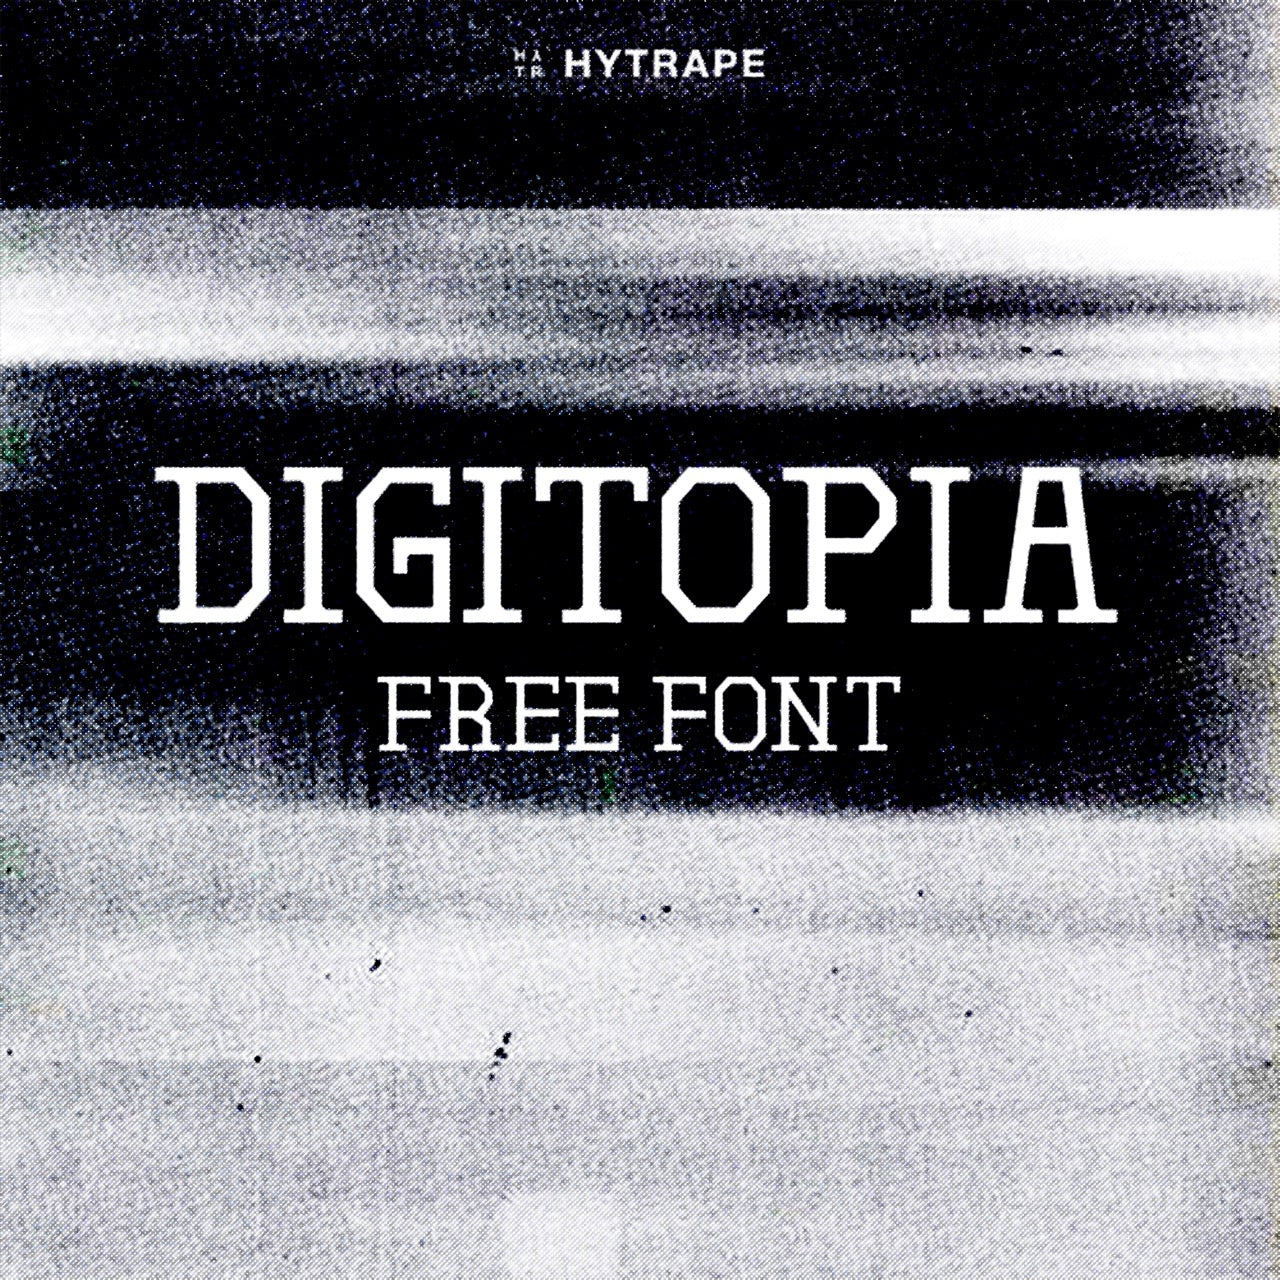 DIGITOPIA FONT (FREE) HYTRAPE